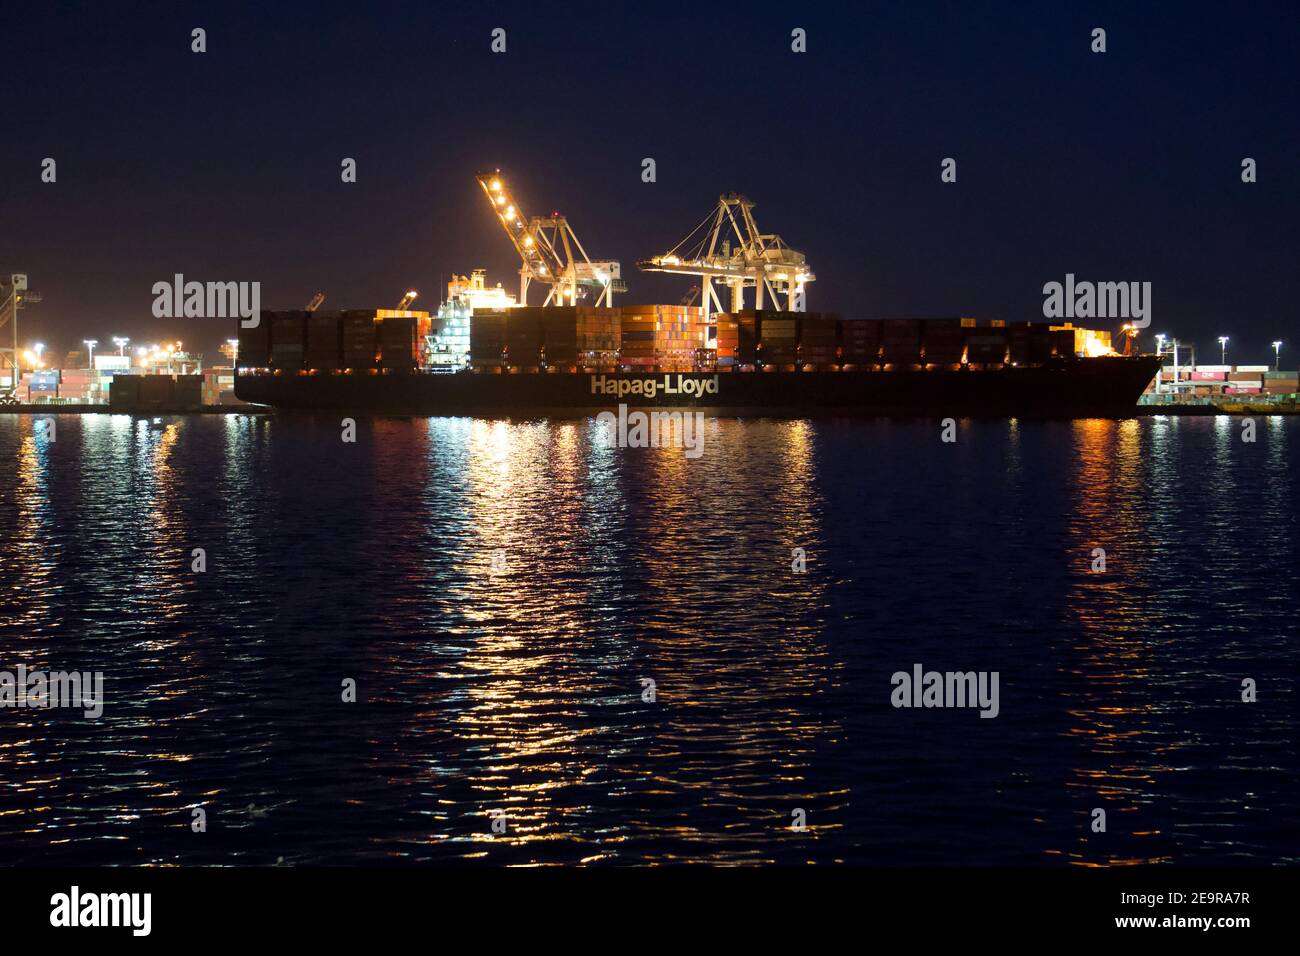 Hapag-Lloyd Schiffscontainer-Barge mit intermodalen Transportcontainern mit Schiffskranen gestapelt, in der Nacht. Hafen von Oakland, CA, USA Stockfoto